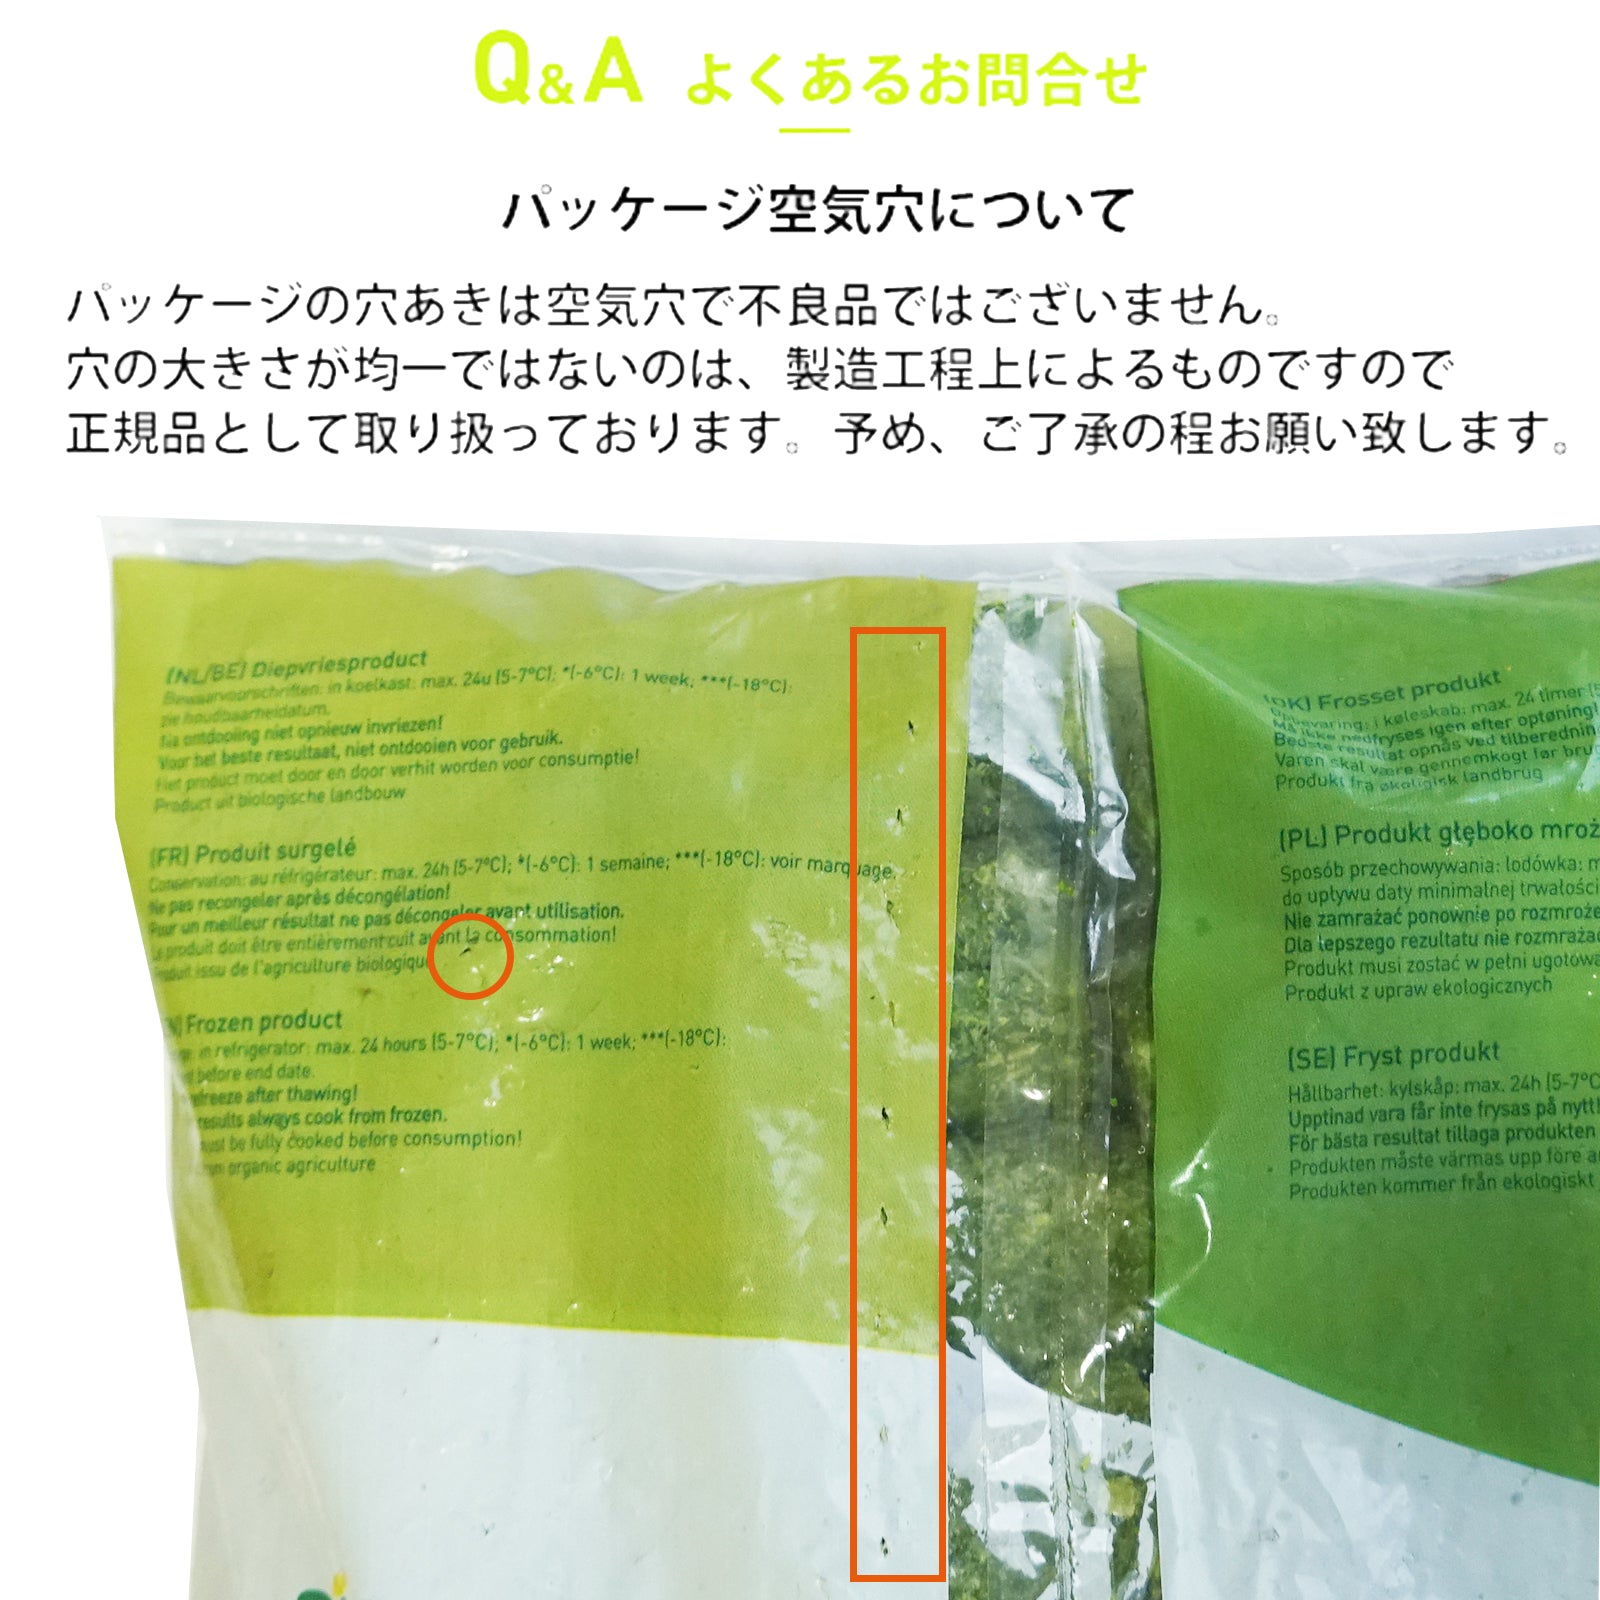 有機 JAS オーガニック 冷凍 芽キャベツ ベルギー産 化学物質不使用 (2.5kg) ホライズンファームズ